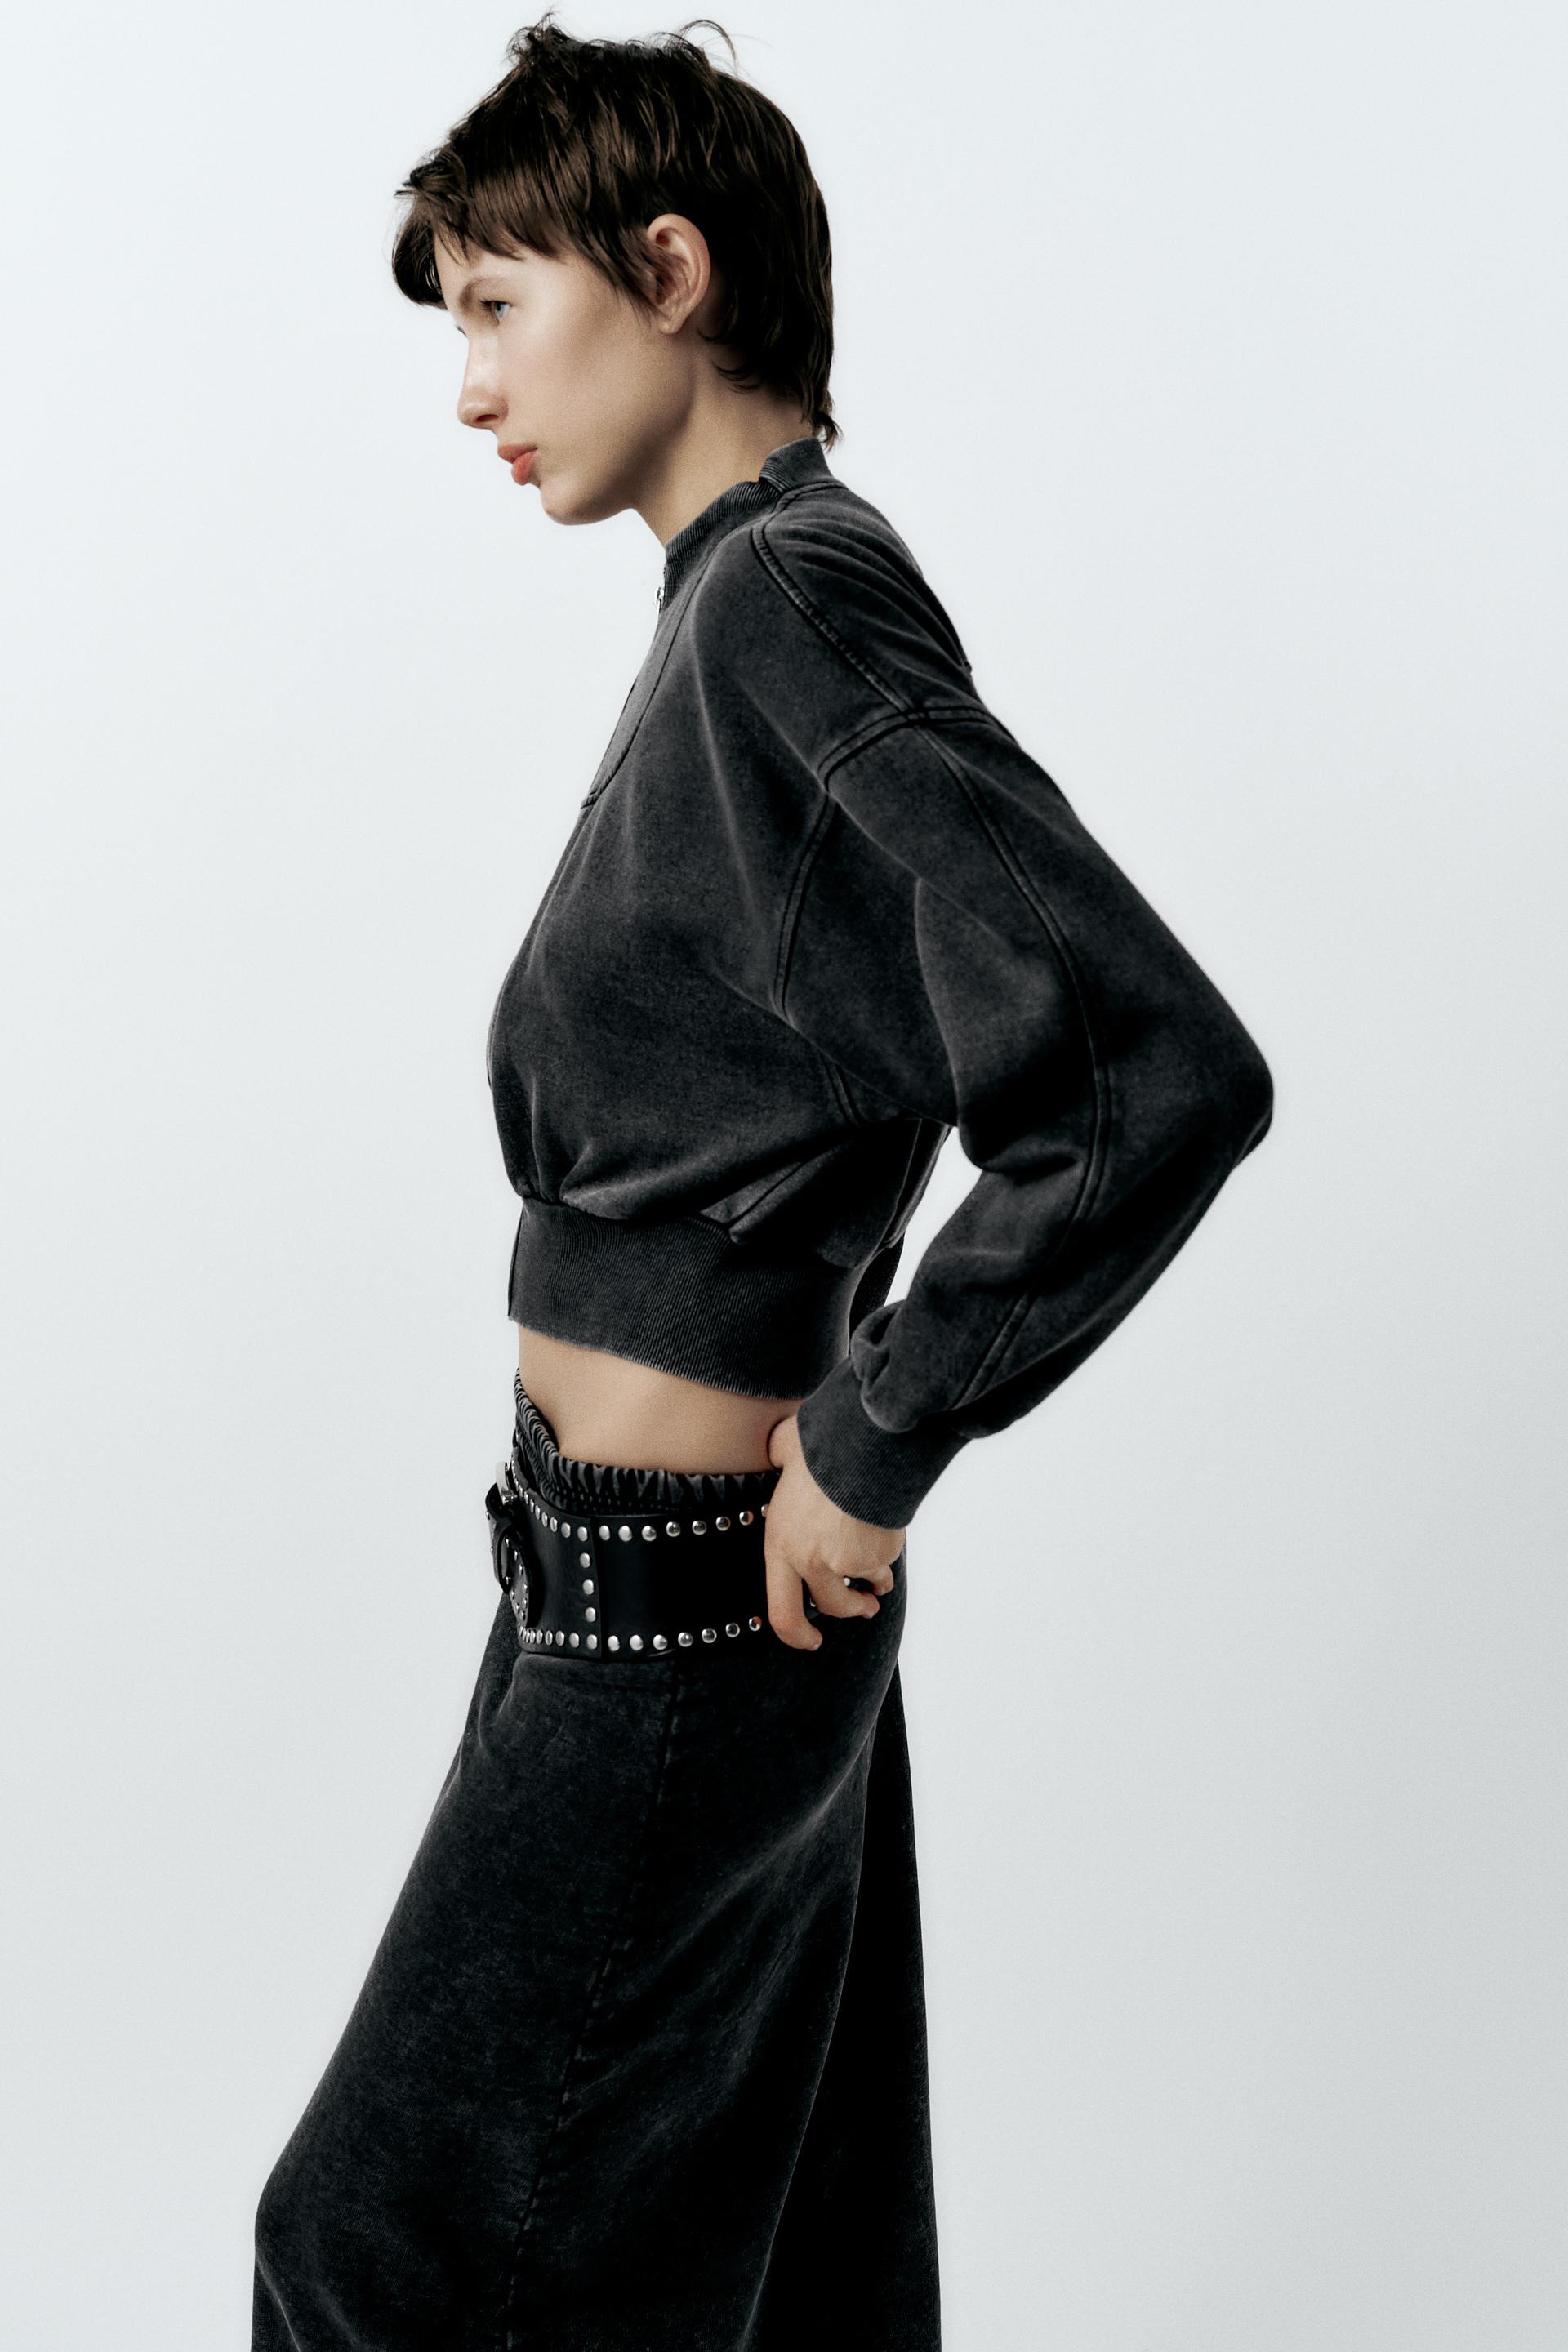 Black Solid Cropped Sweatshirt For Women – Zink London